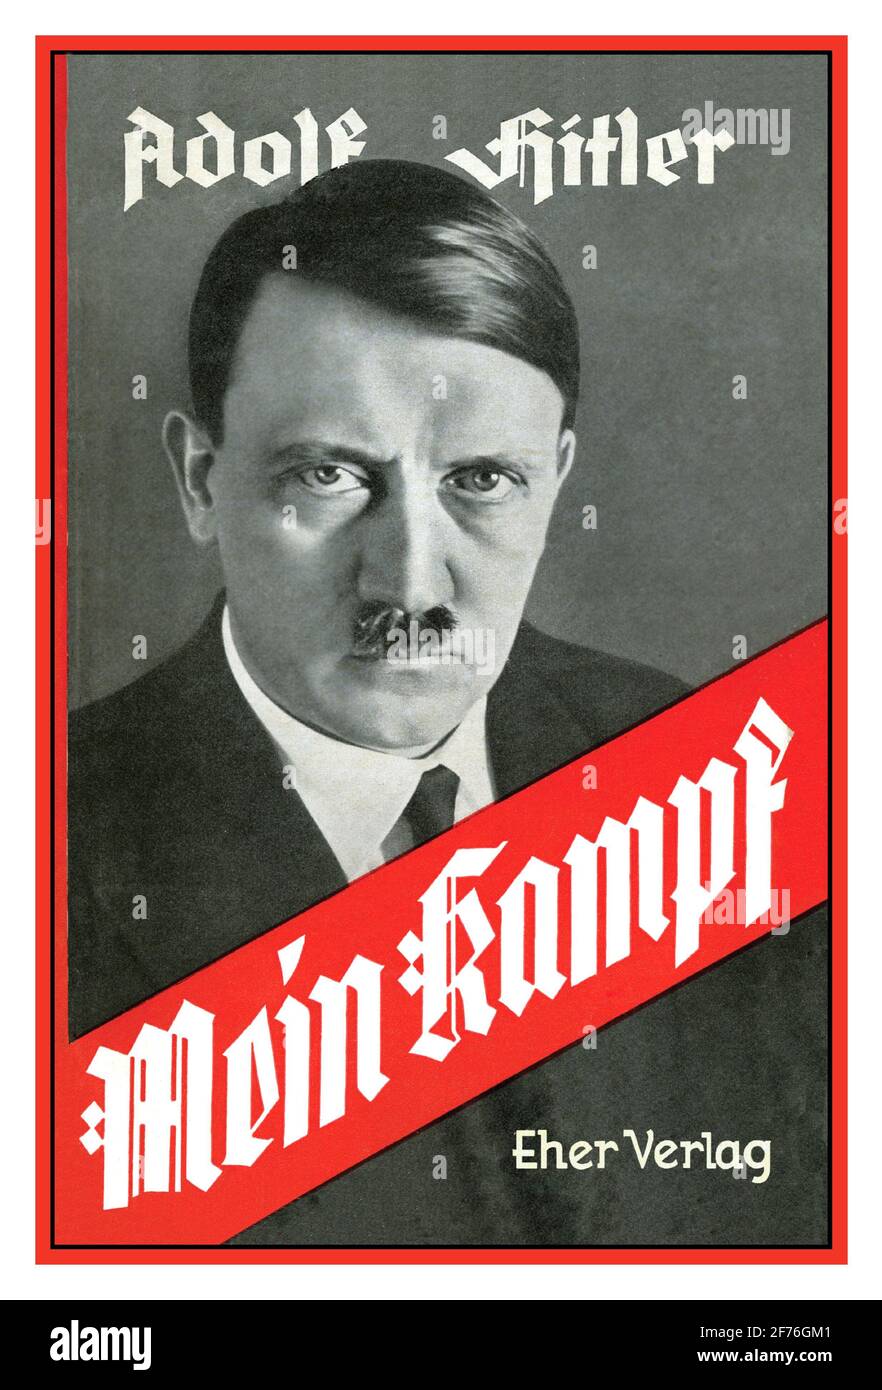 MEIN KAMPF Adolf Hitler frontespizio Mein Kampf un manifesto autobiografico del 1925 di Adolf Hitler, leader del partito nazista. Il lavoro descrive il processo con cui Hitler divenne antisemita e delinea la sua ideologia politica e i piani futuri per la Germania. Il volume 1 di Mein Kampf è stato pubblicato nel 1925 e il volume 2 nel 1926. Foto Stock